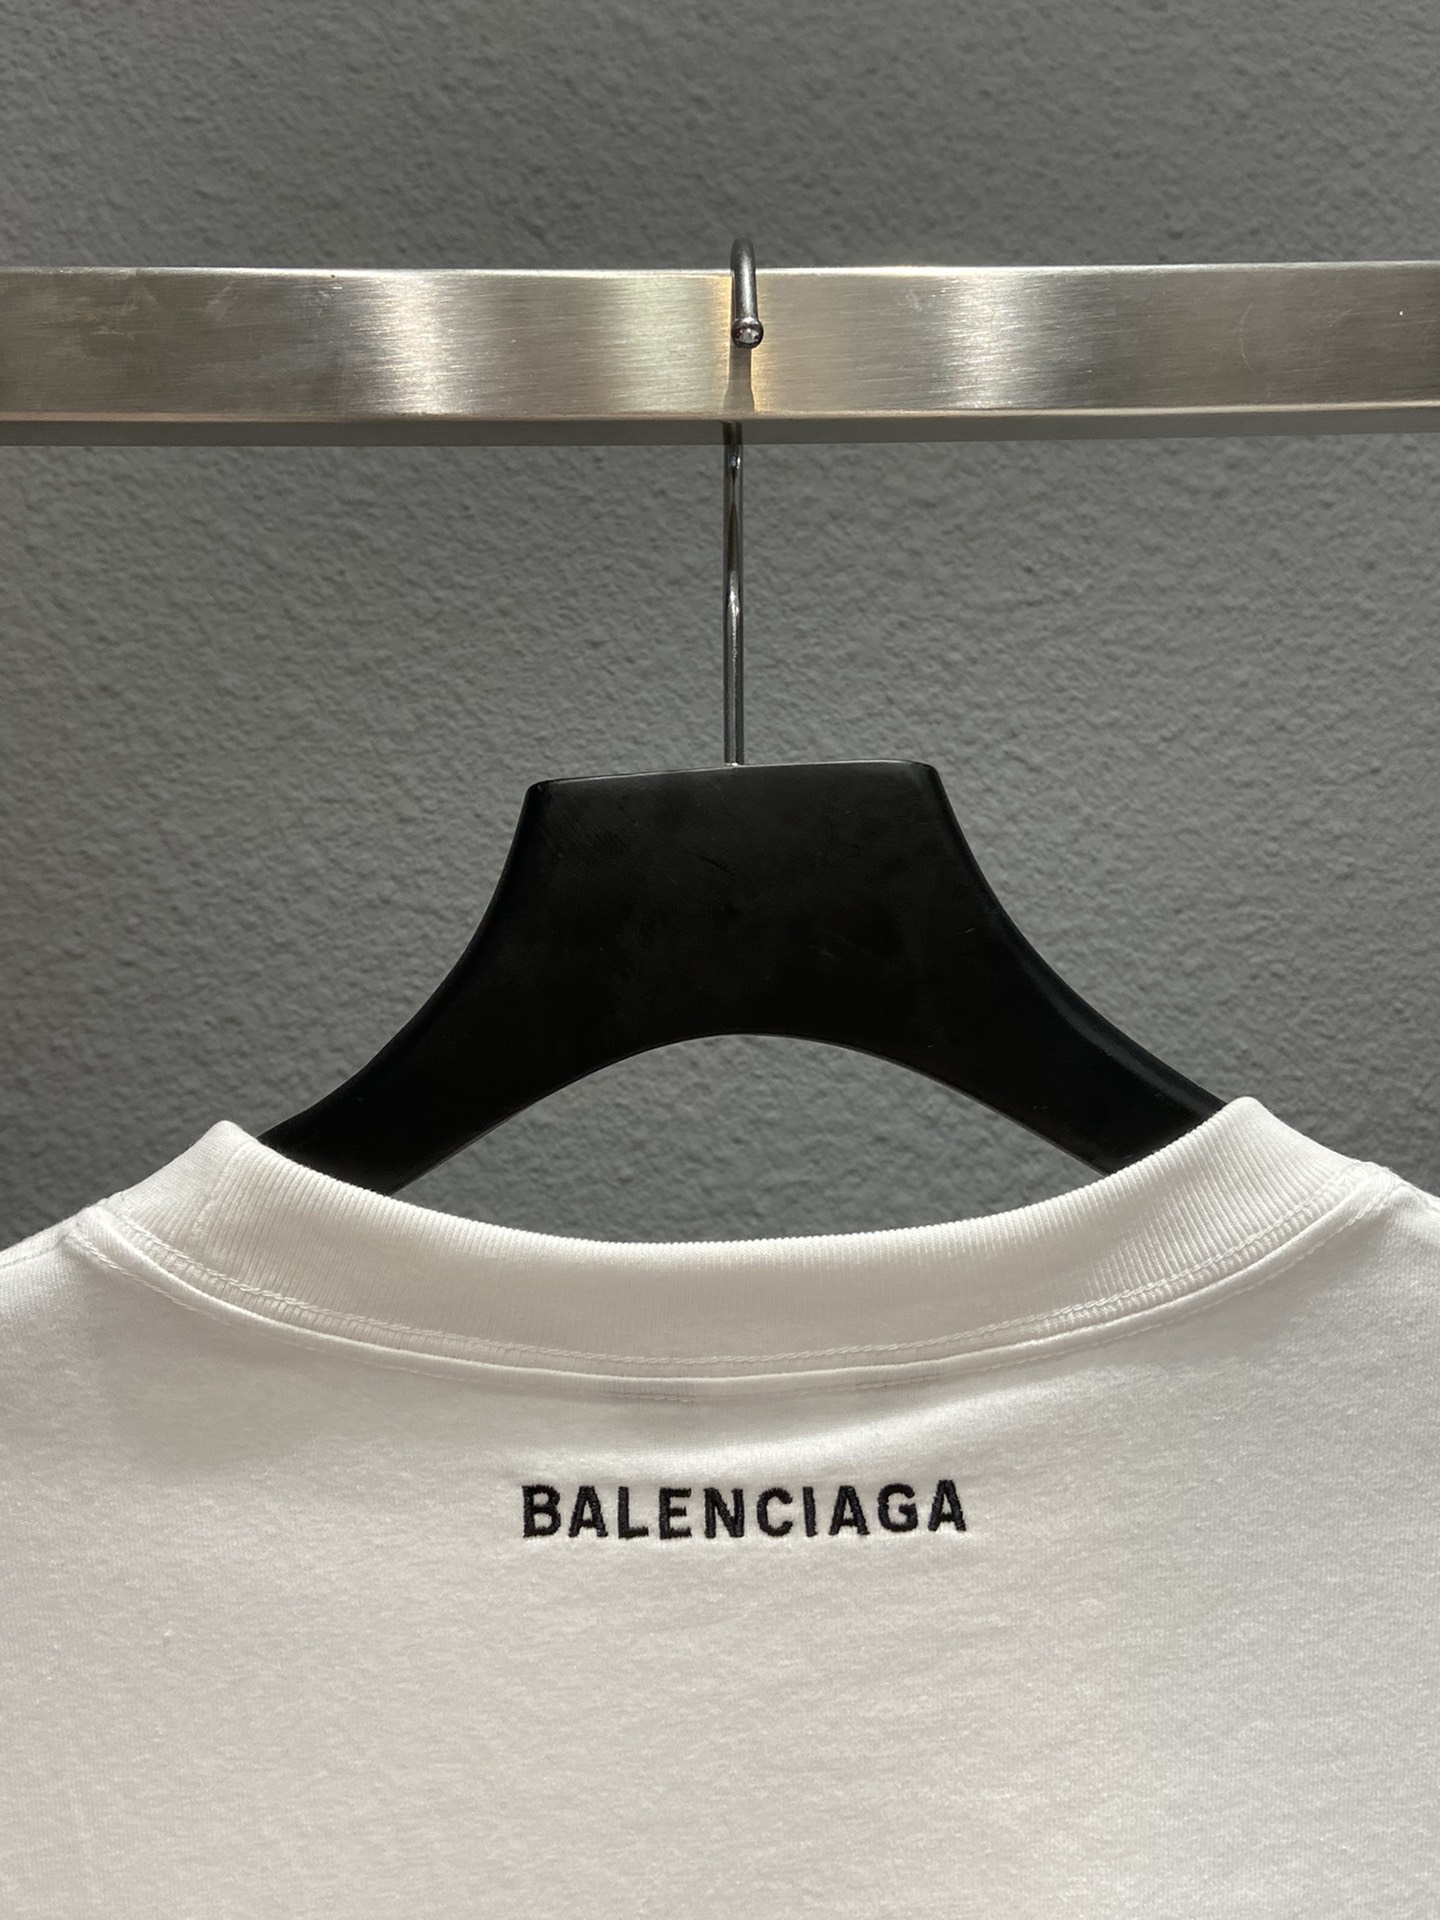 Balenciaga T-Shirt Printed in White